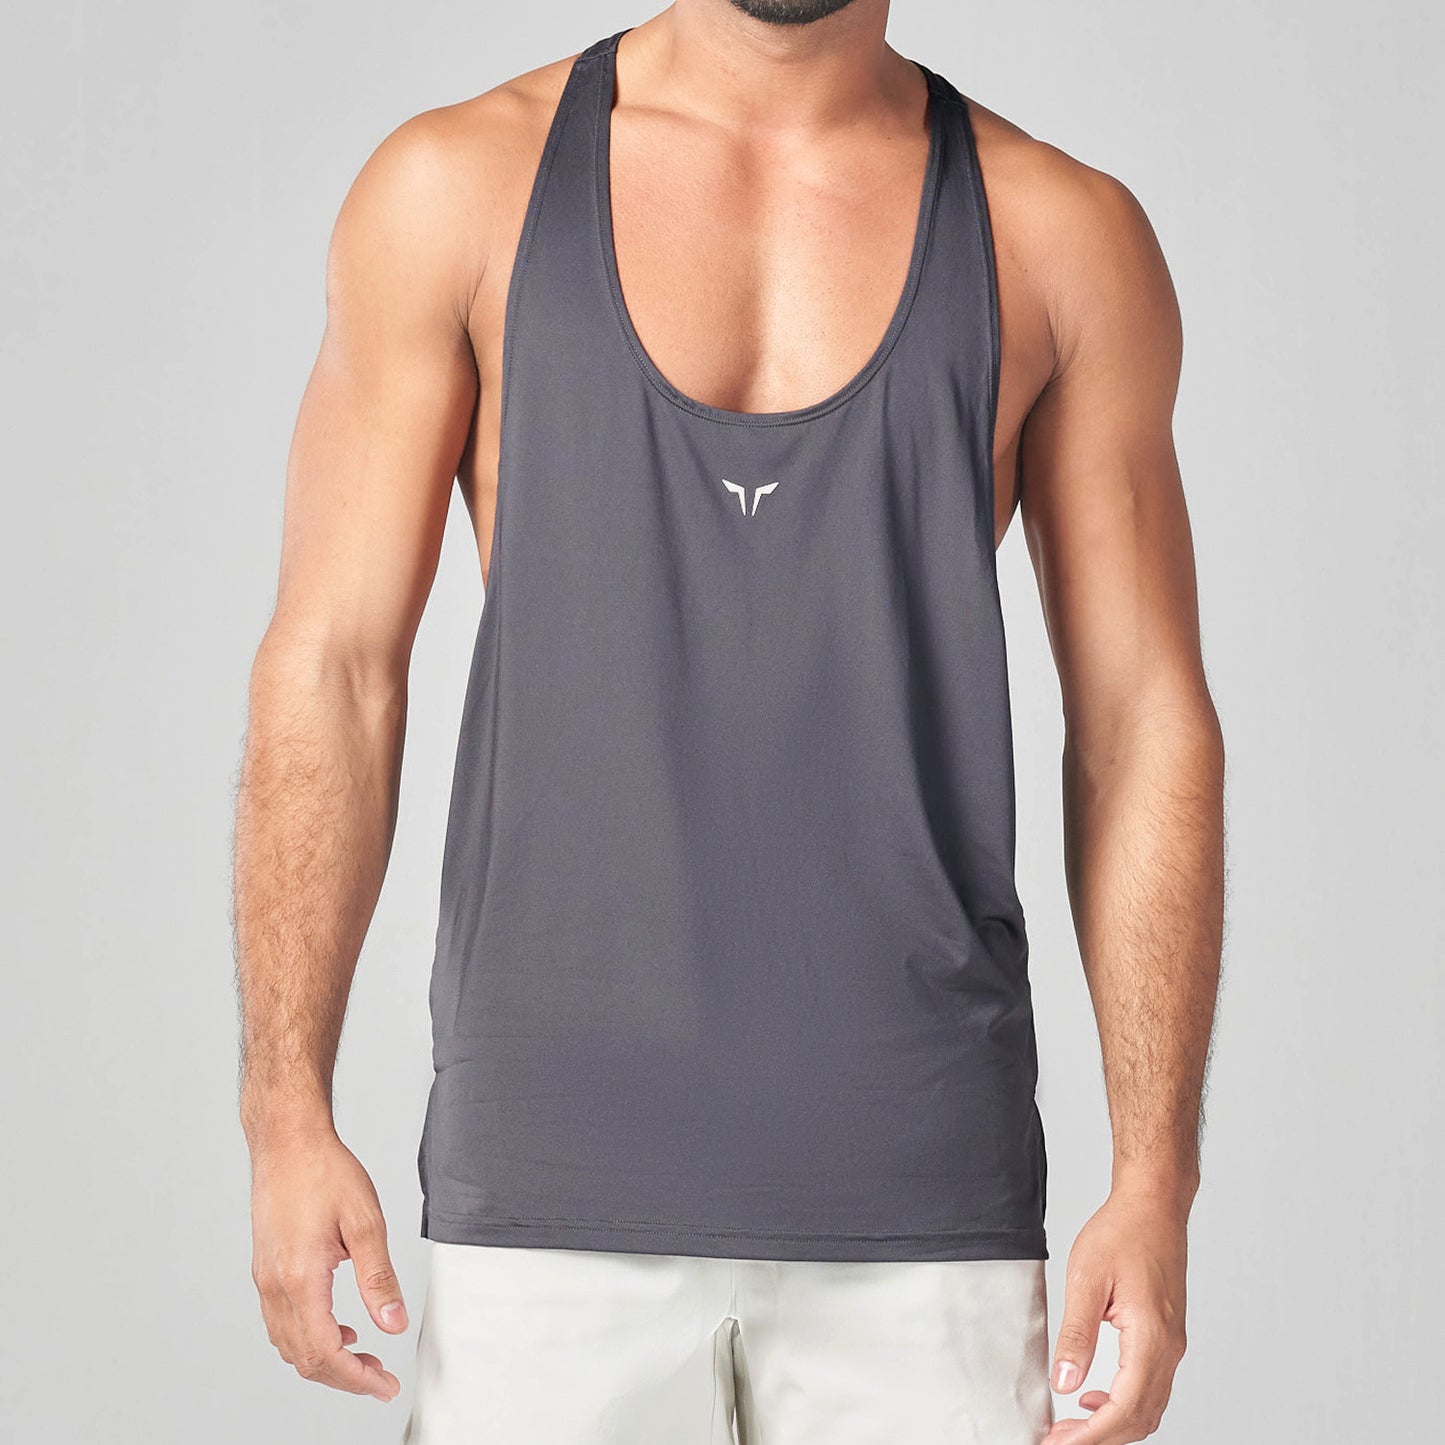 squatwolf-gym-wear-essential-gym-stringer-charcoal-stringer-vests-for-men